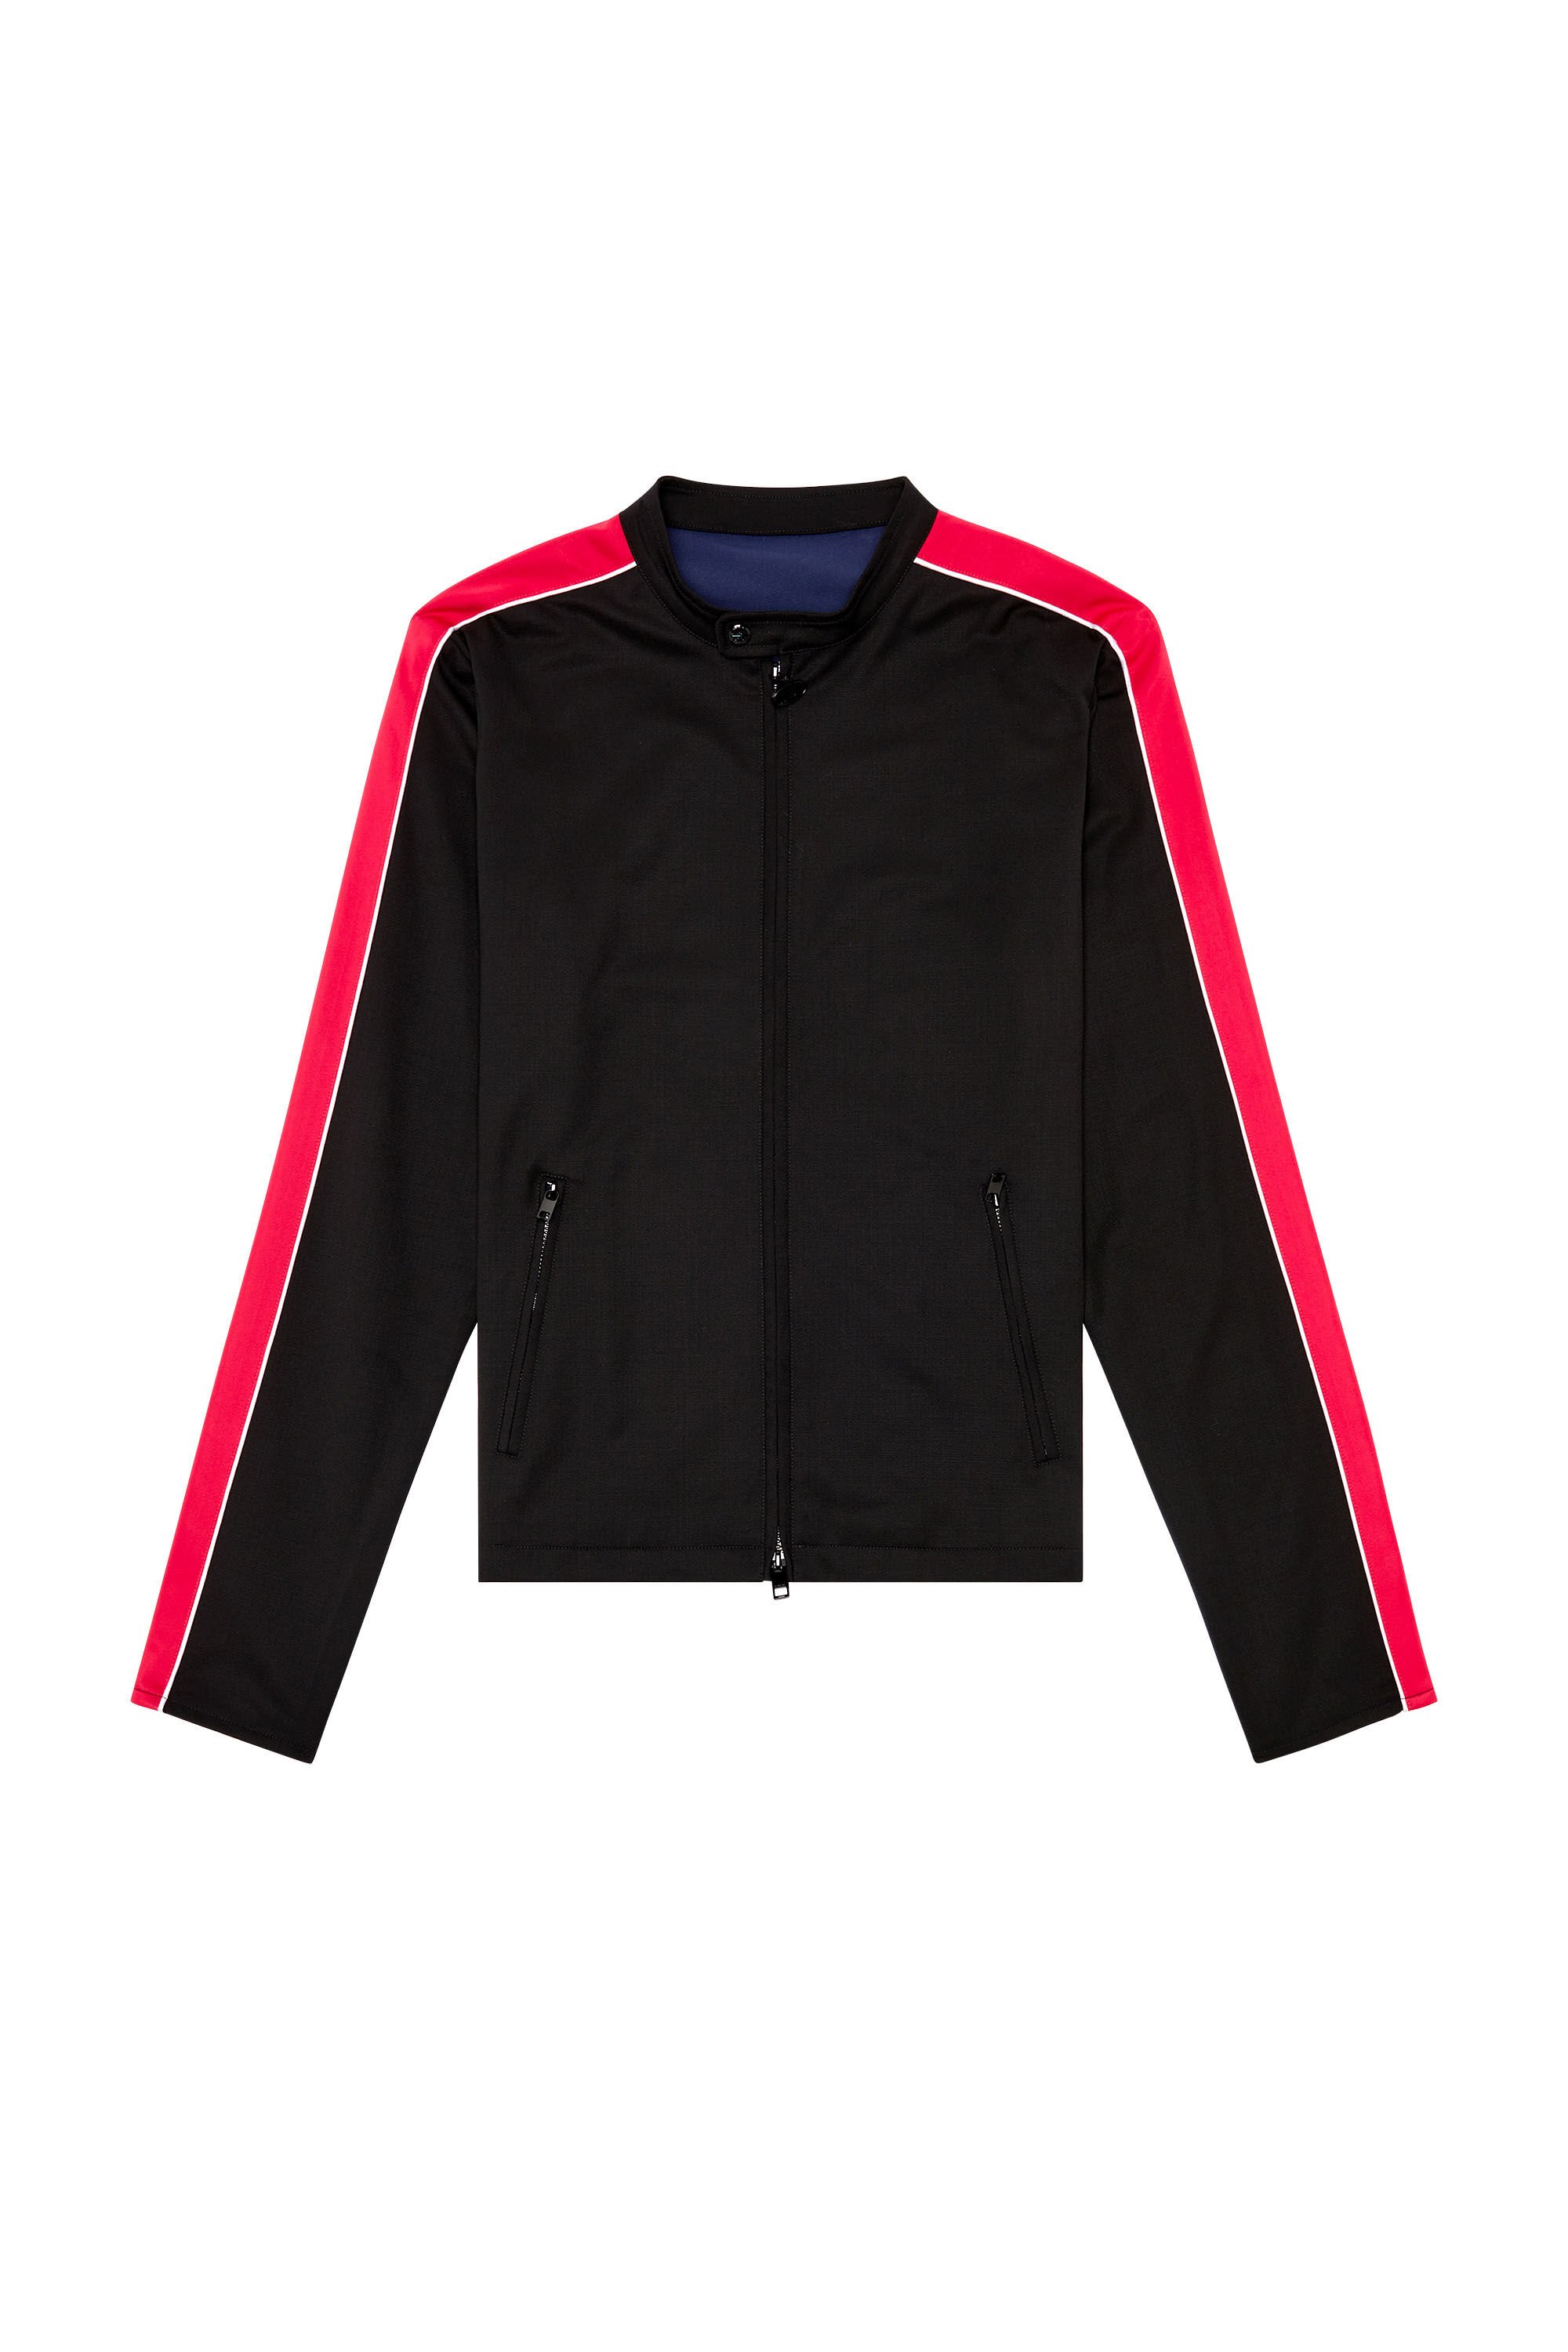 Diesel - J-DEVLIN, Man Biker jacket in cool wool and tech jersey in Multicolor - Image 2